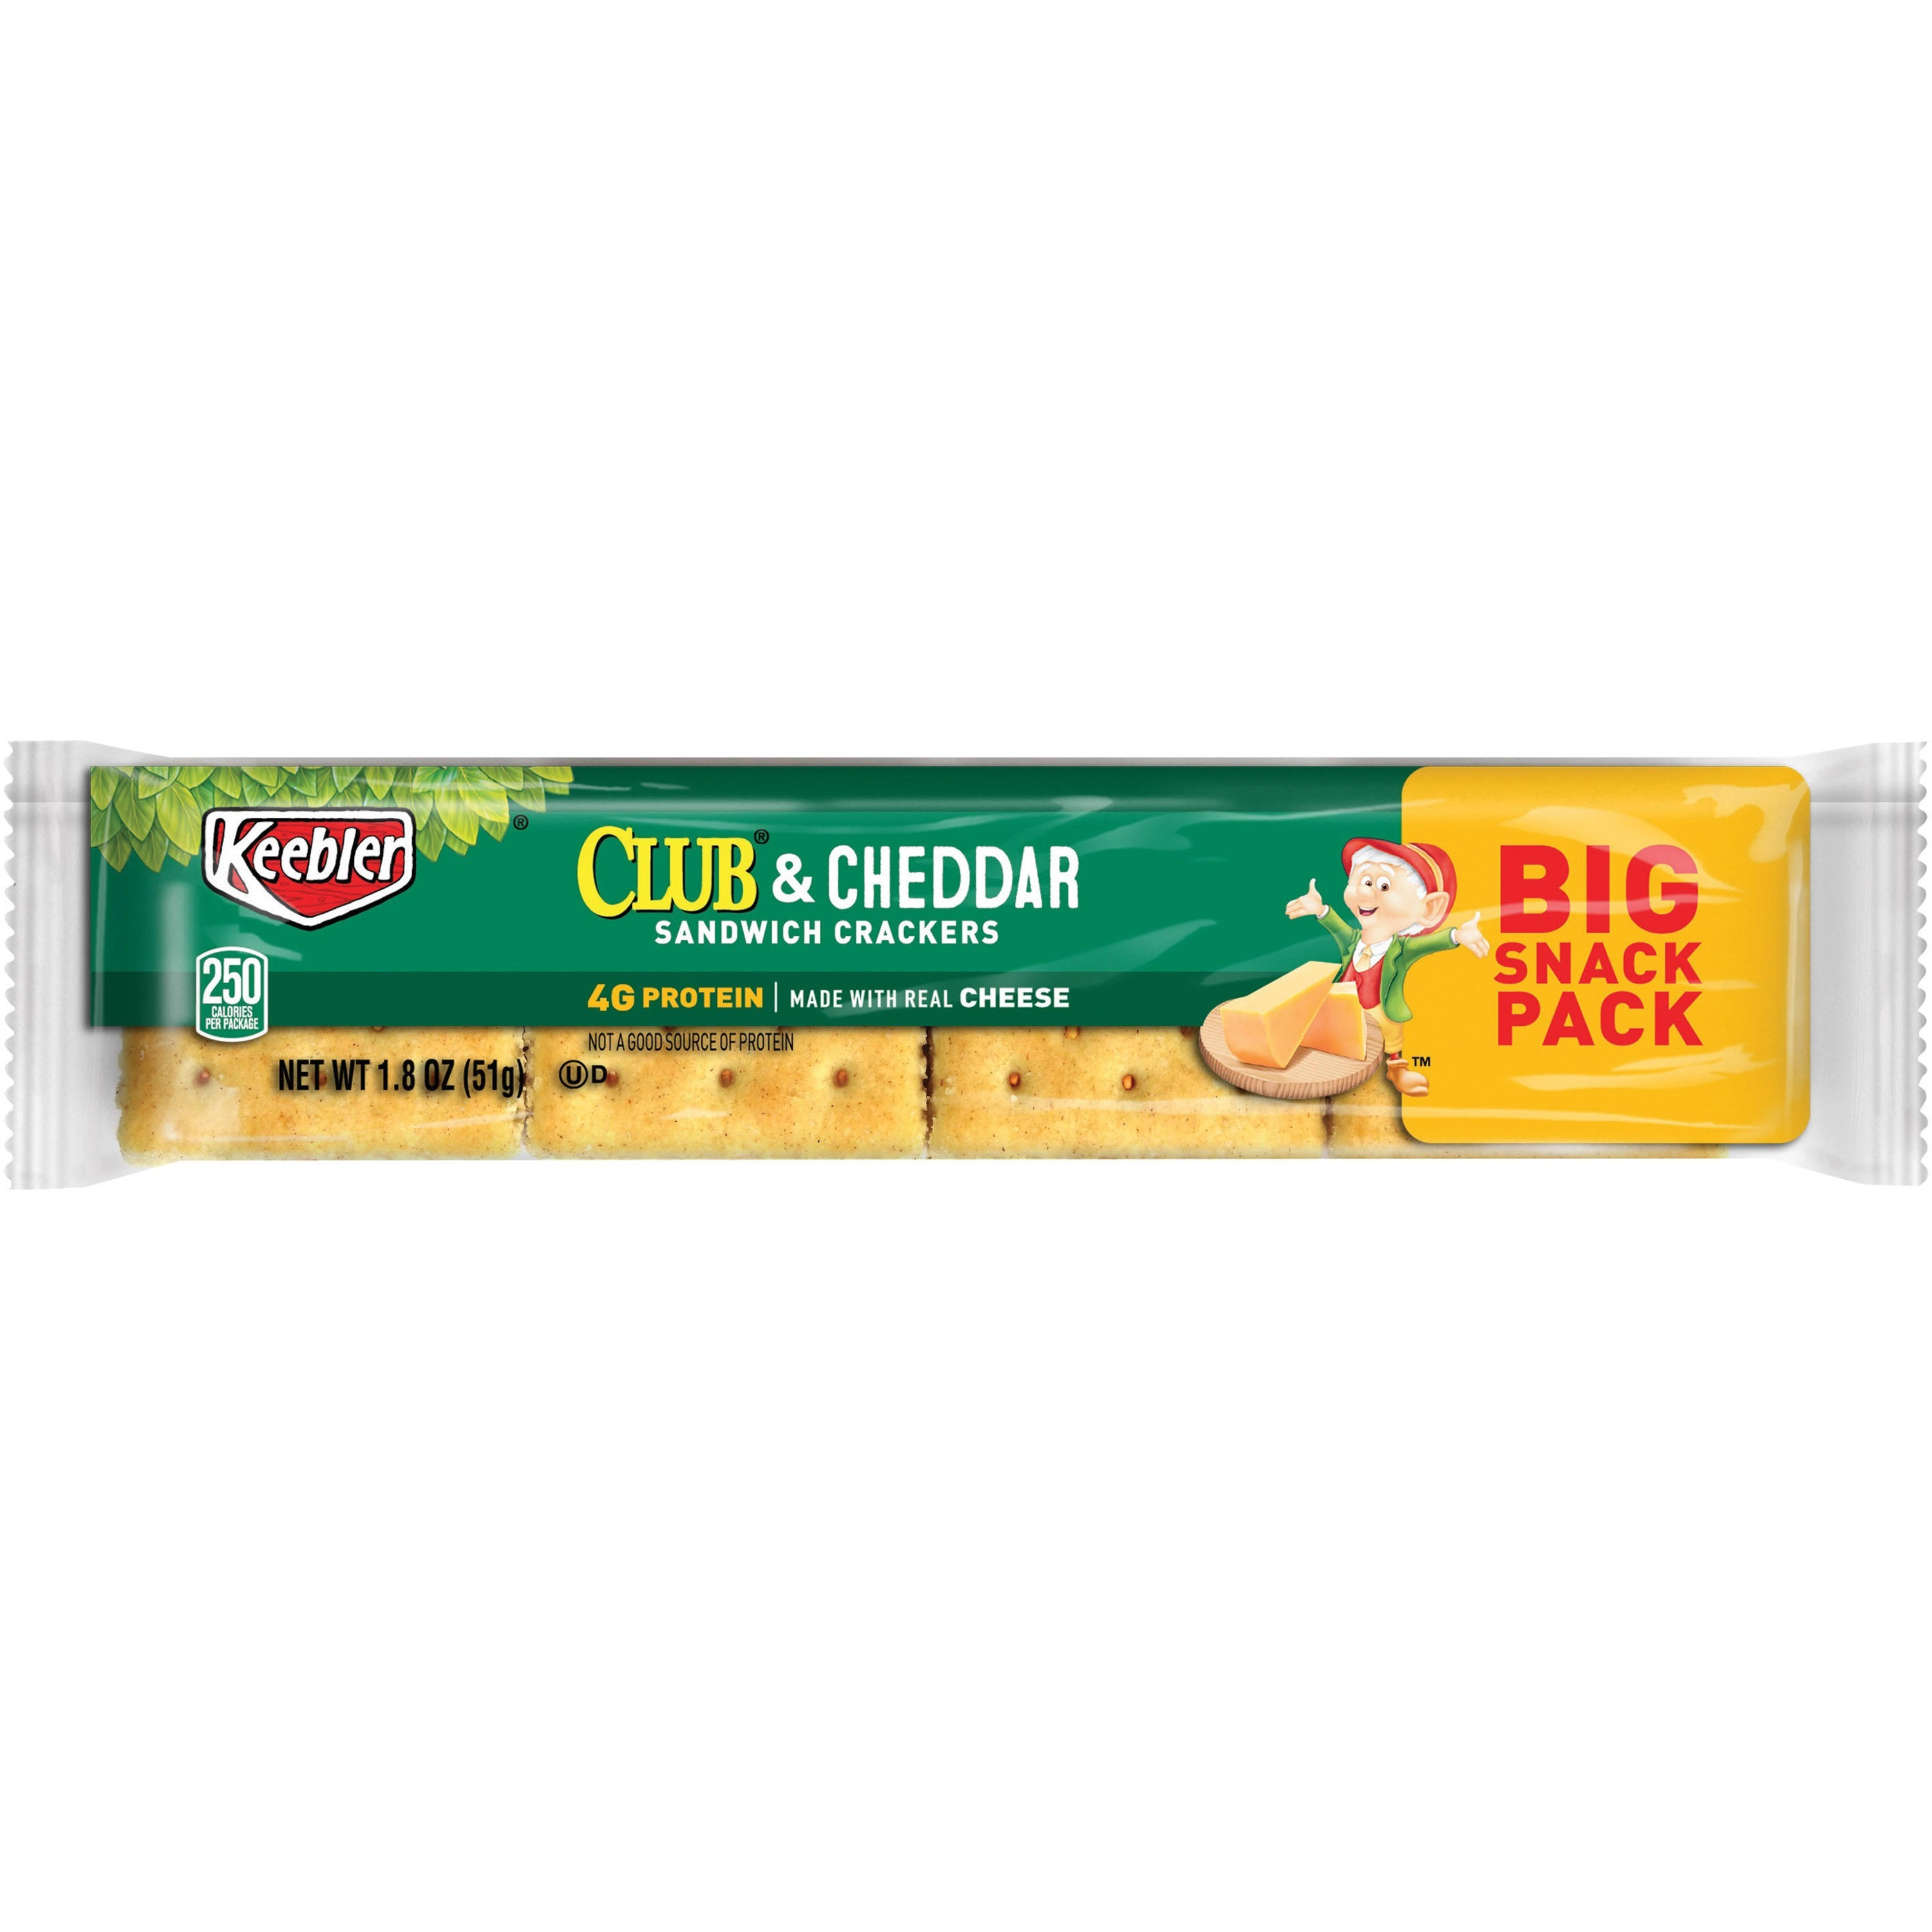 Keebler Club & Cheddar Sandwich Crackers - 1.8 oz each